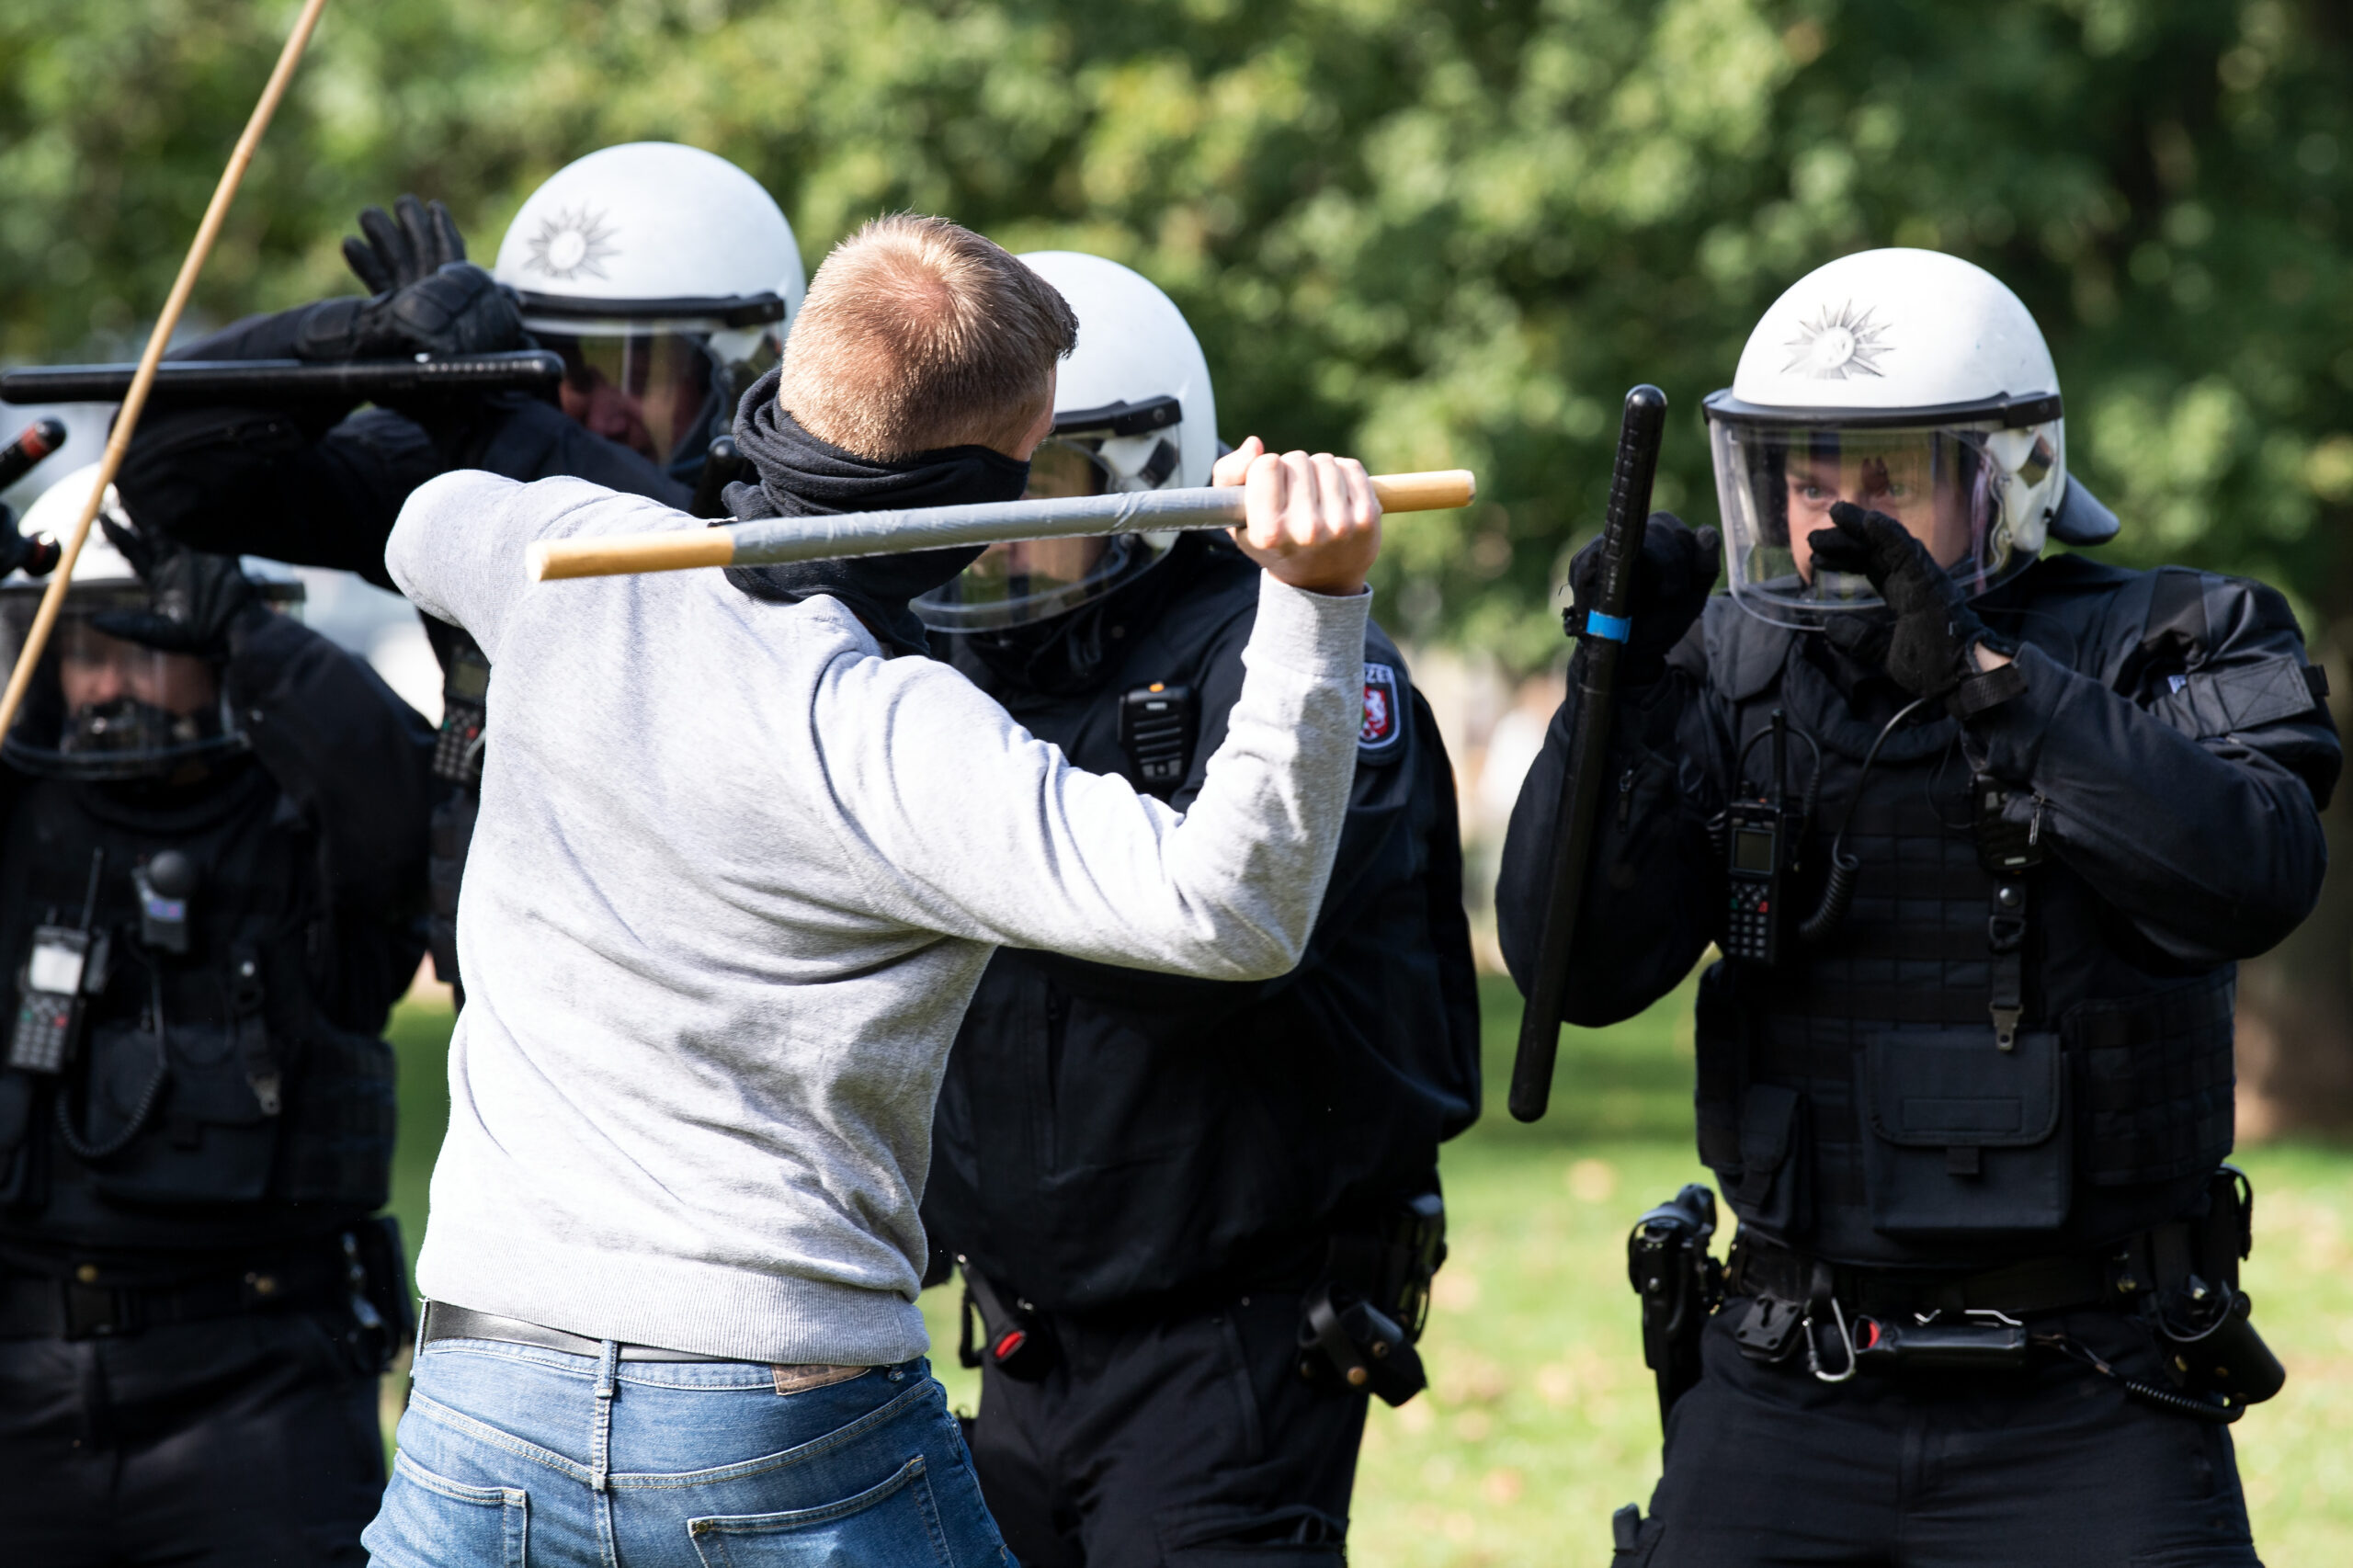 Polizisten werden im Dienst immer häufiger angegriffen (Symbolbild).